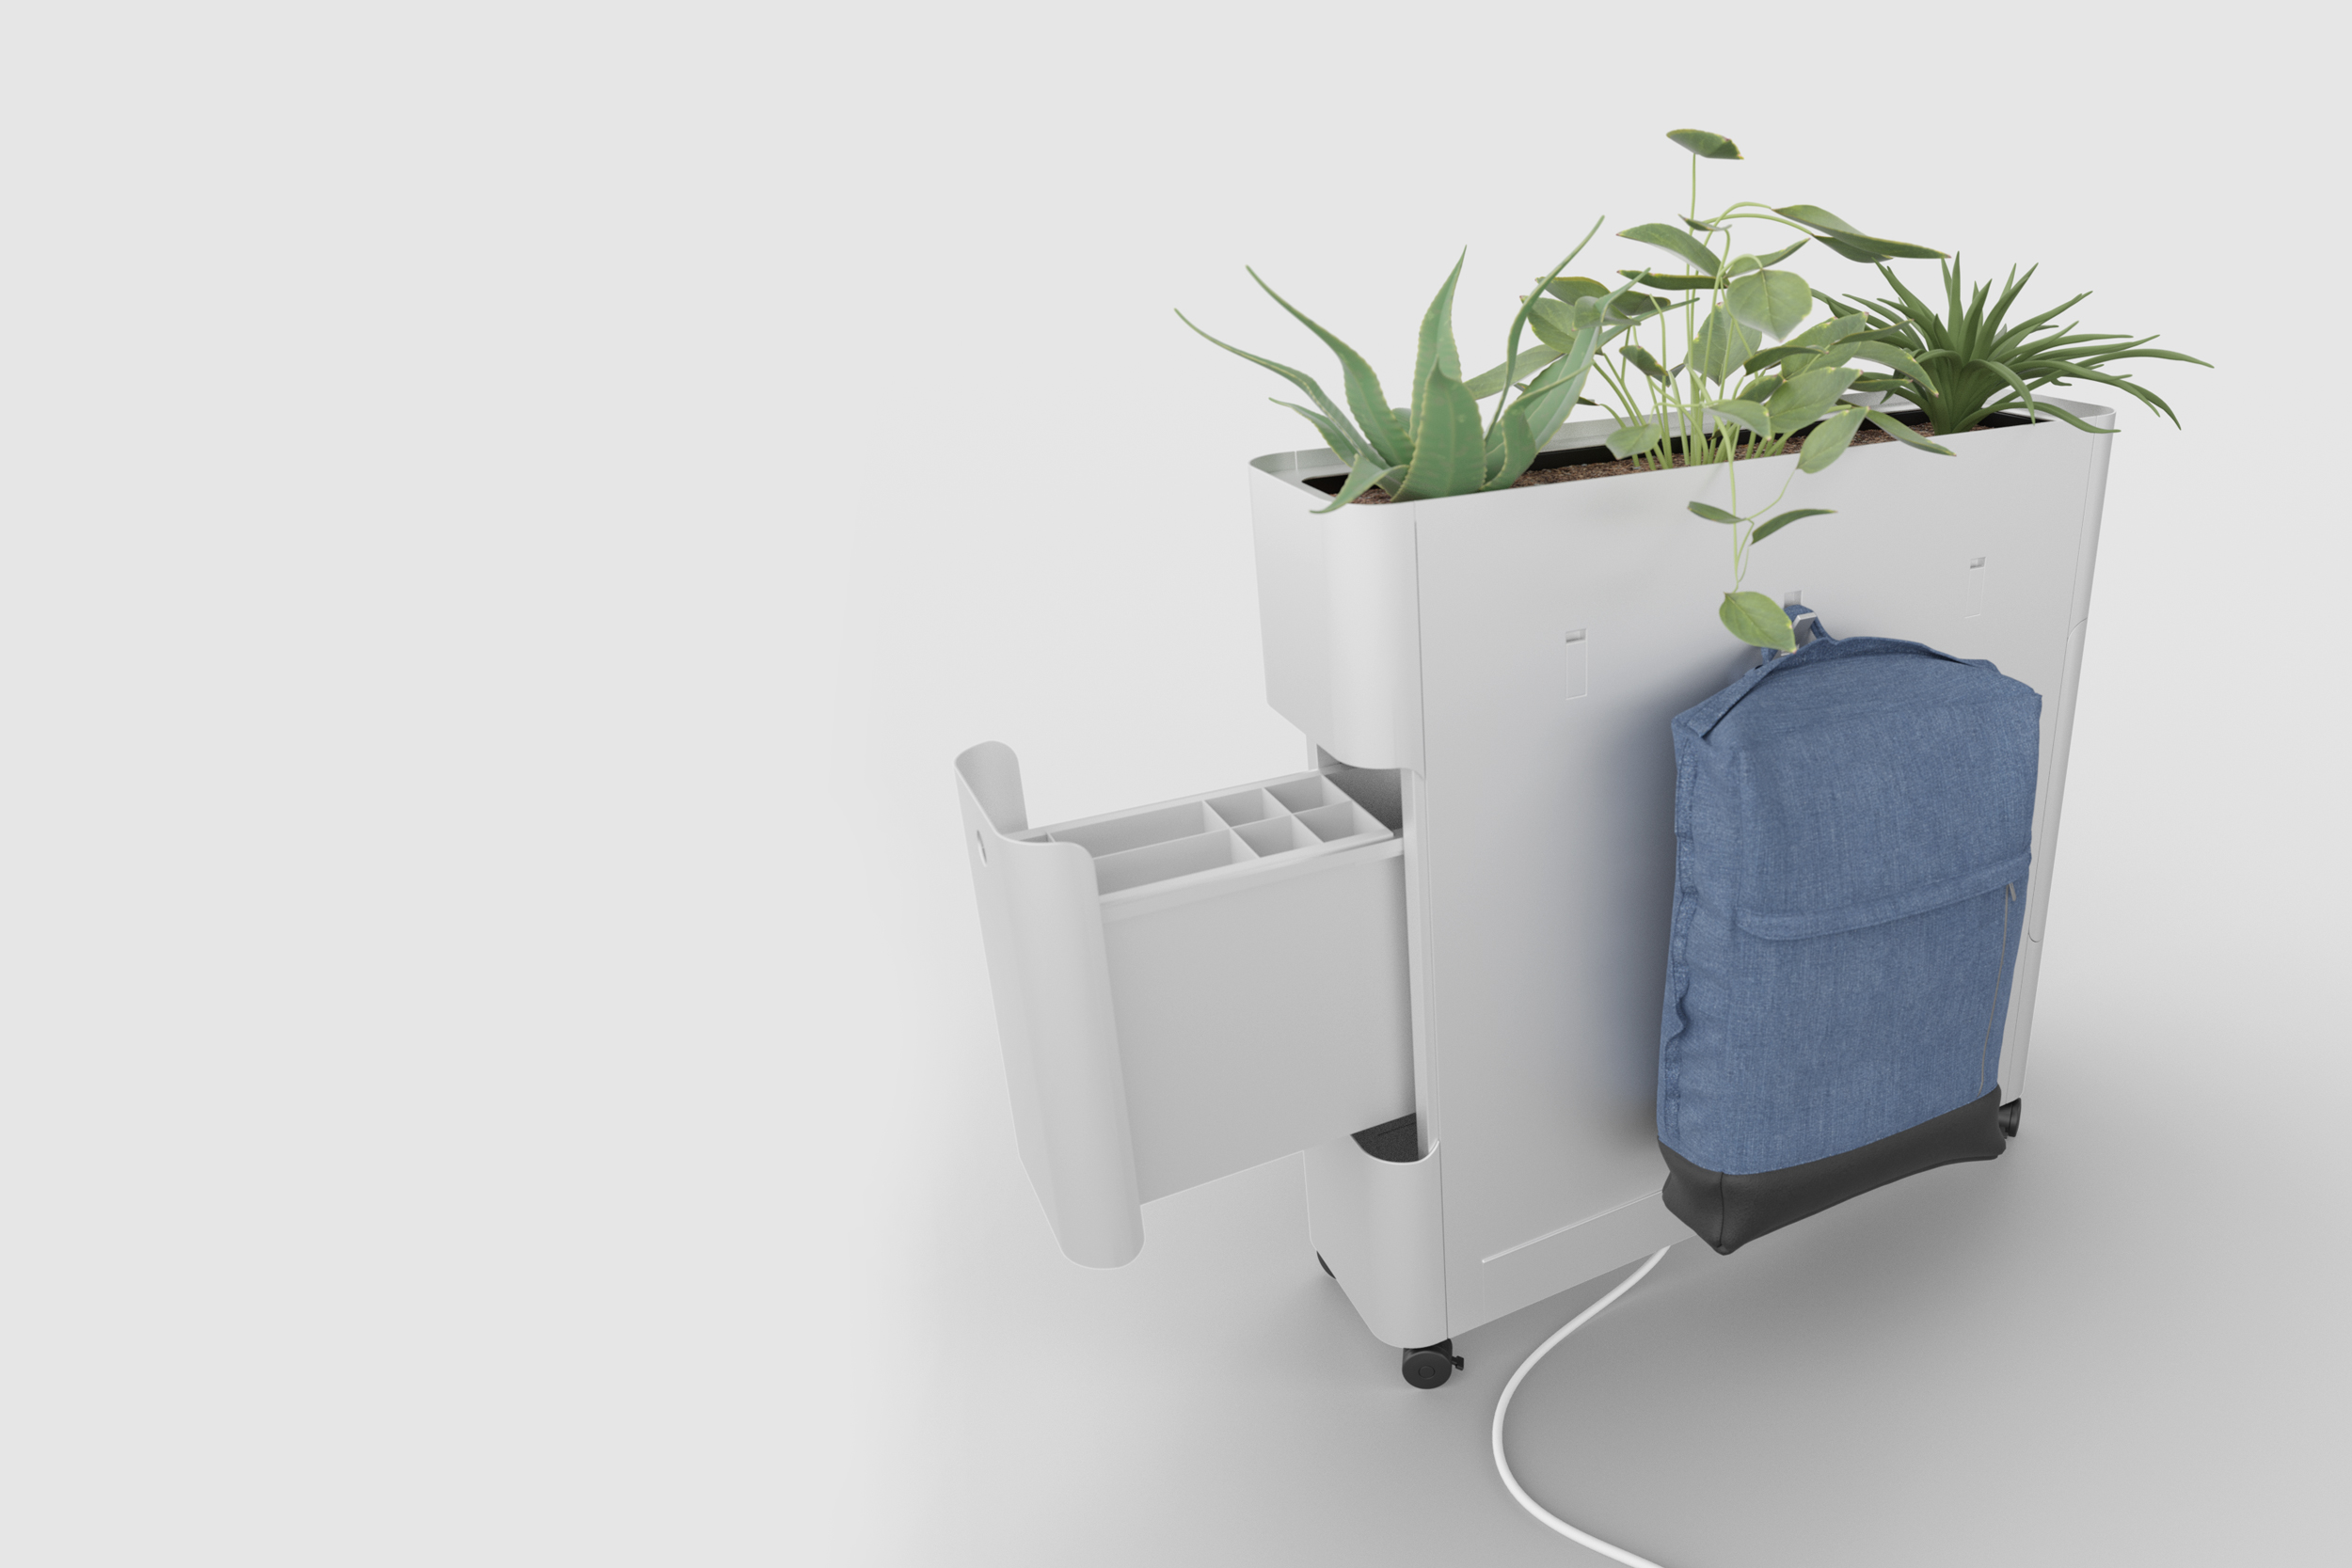 Design Pflanzen Raumtrenner/Devider für das Büro/Office. Blech Möbel Furniture Szene